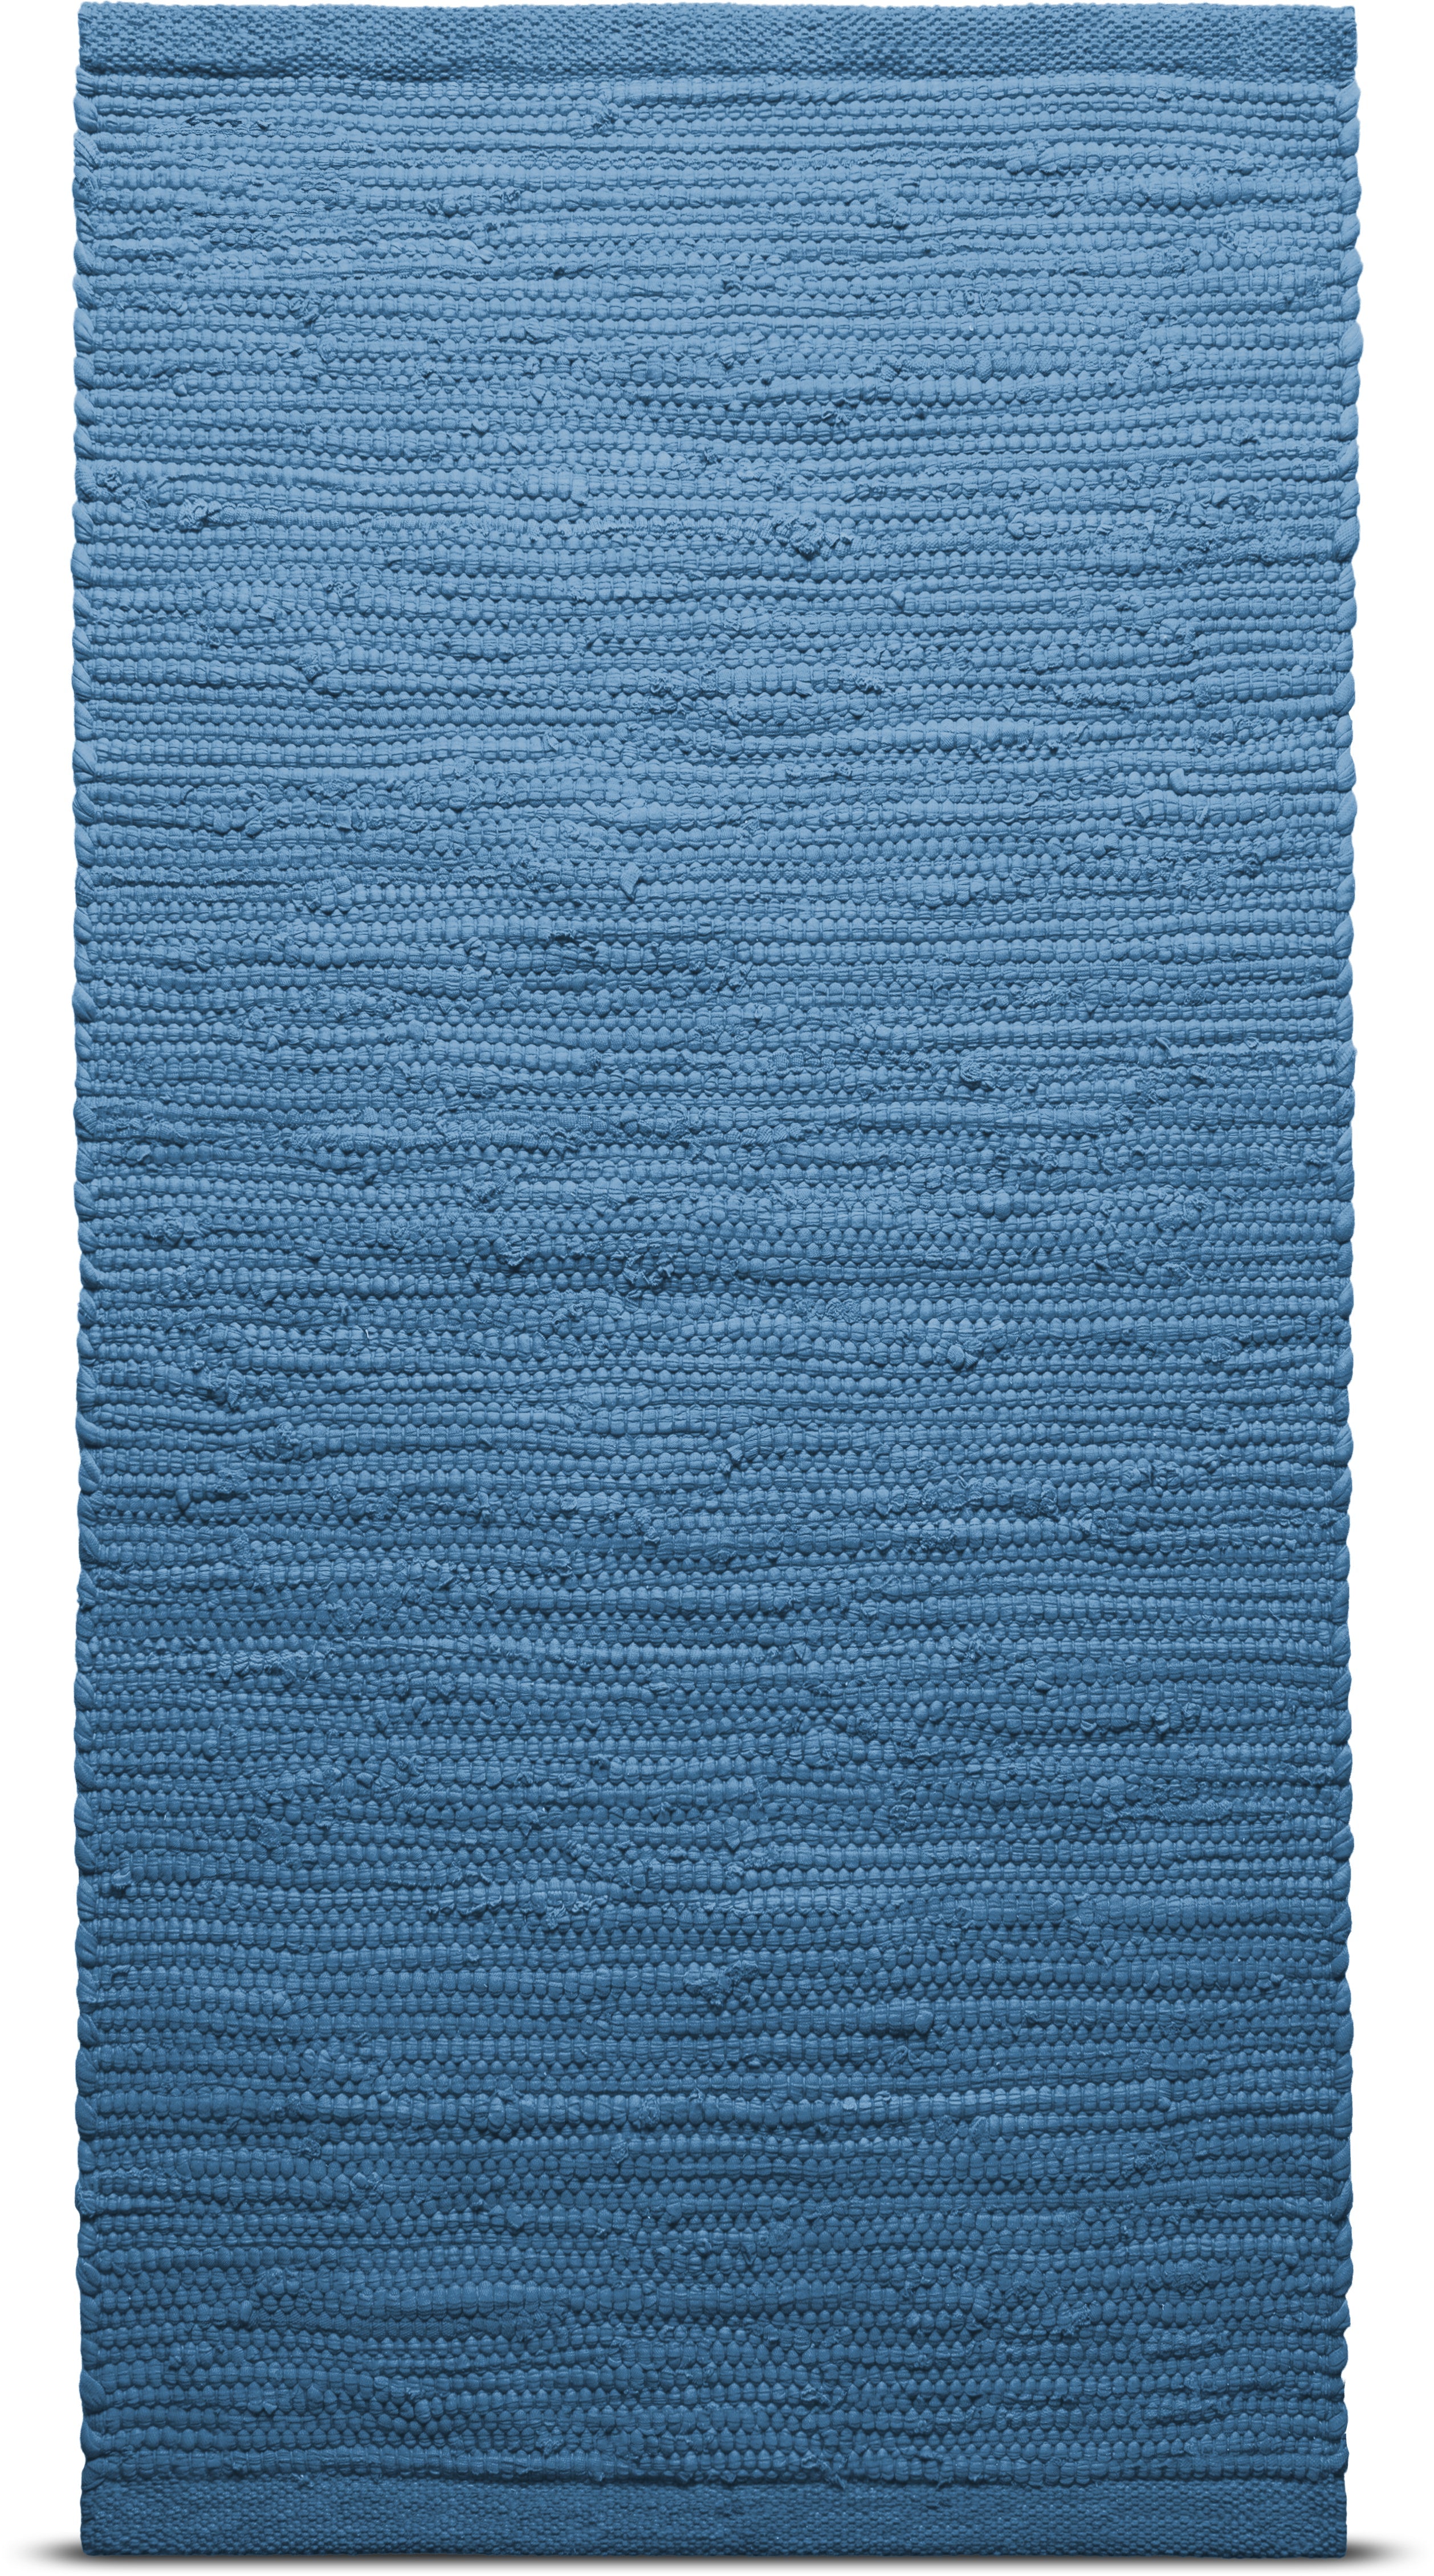 Tappeto di cotone solido 170 x 240 cm, Pacifico